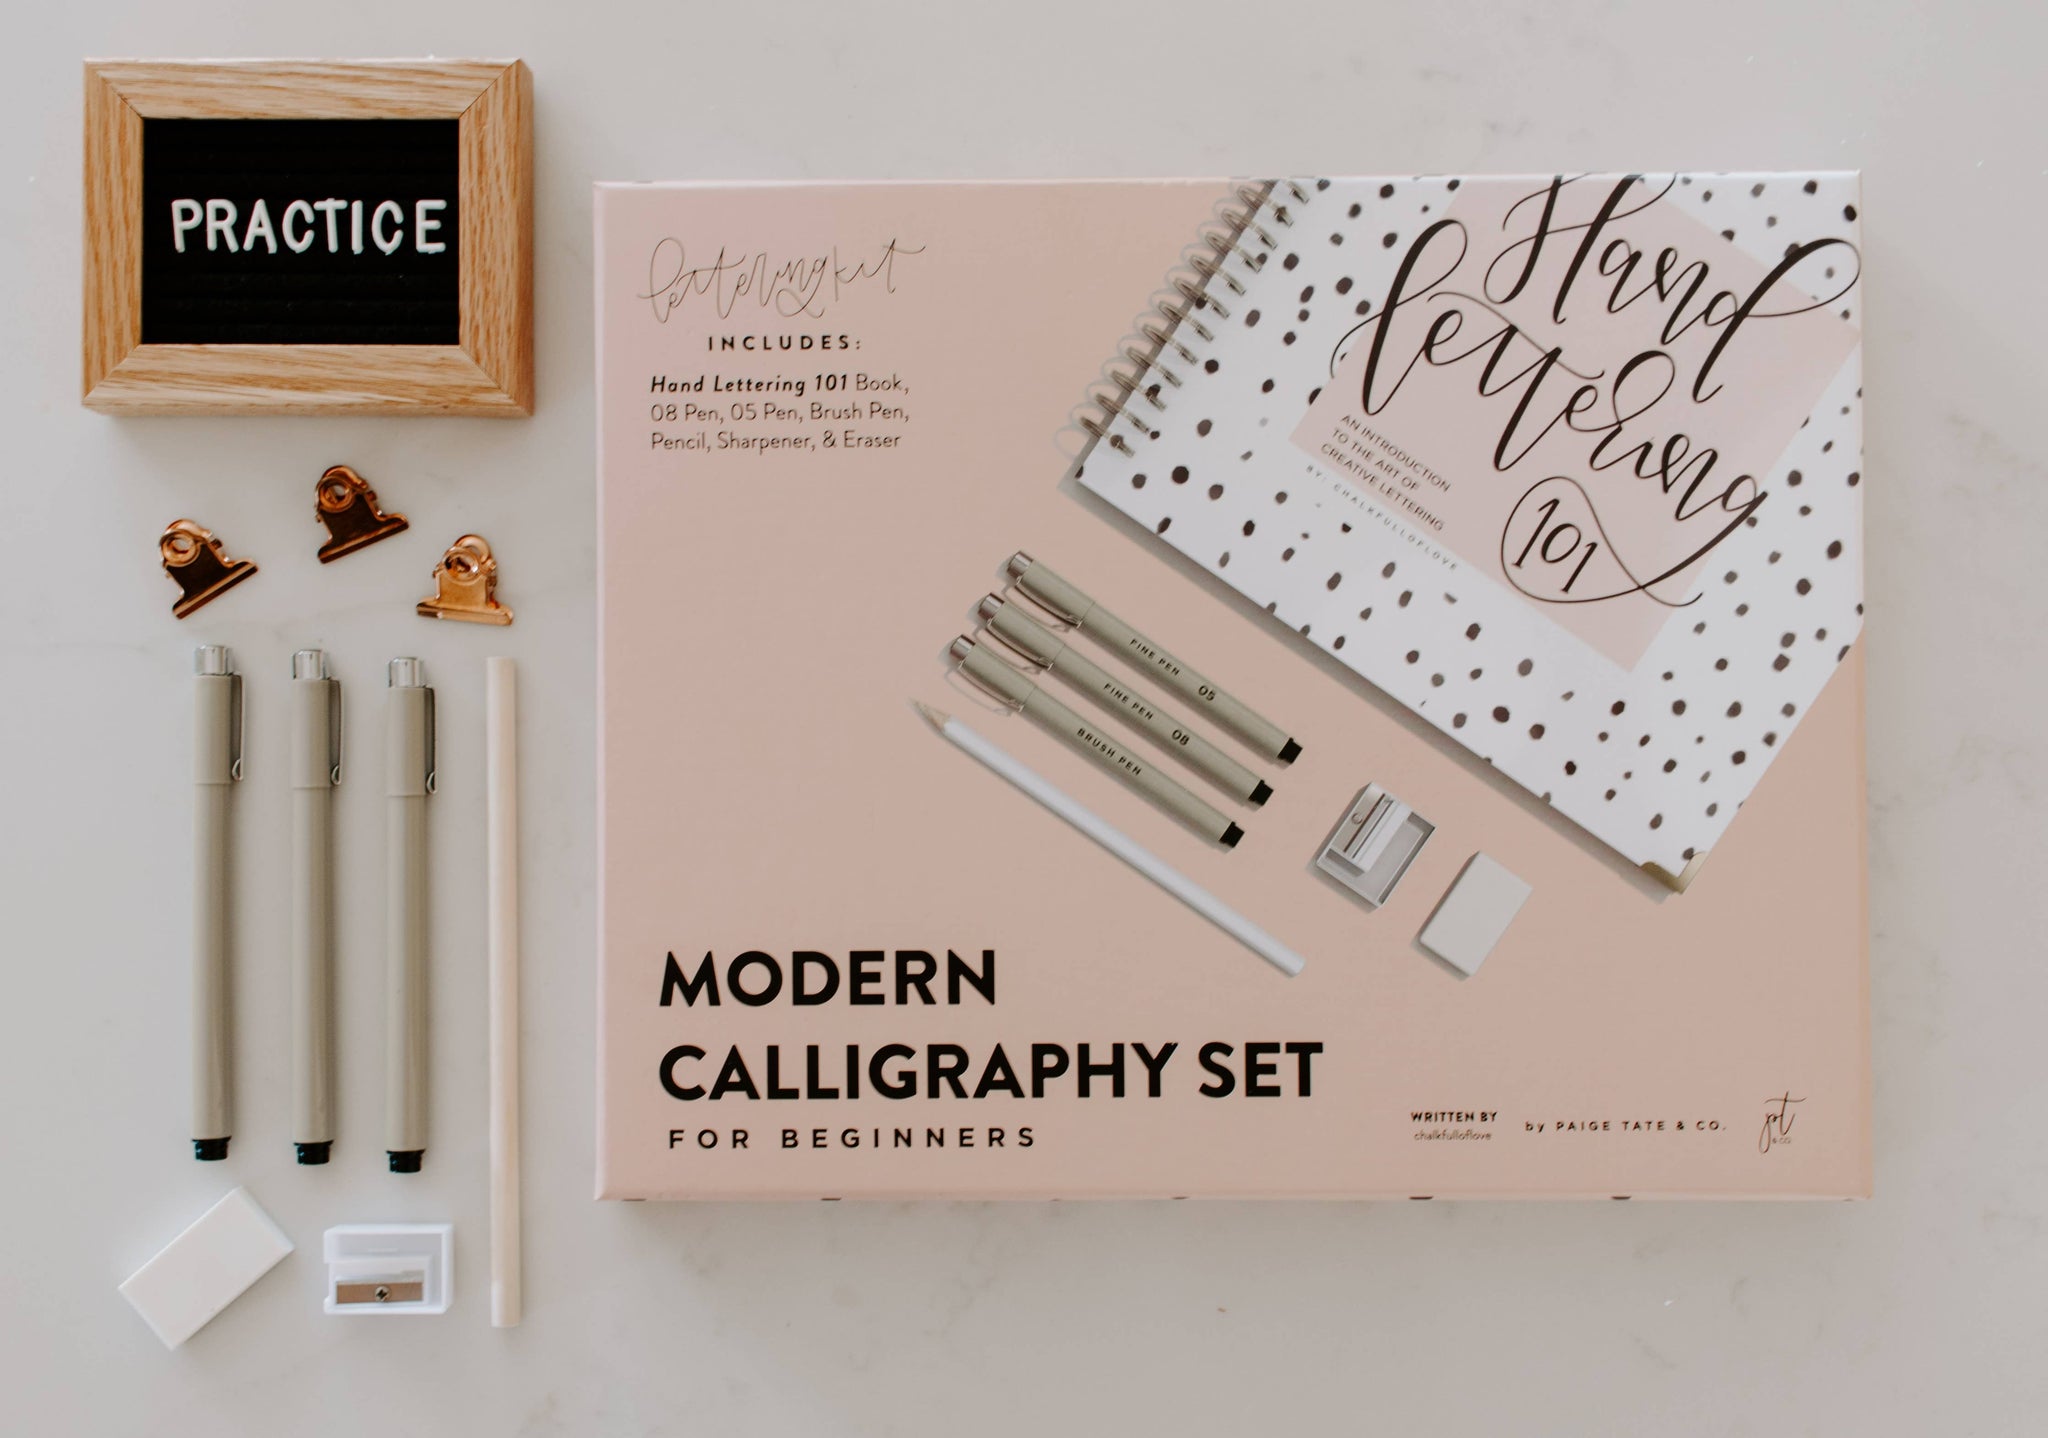 Modern Calligraphy Set for Beginners - The Dulcimer Shoppe